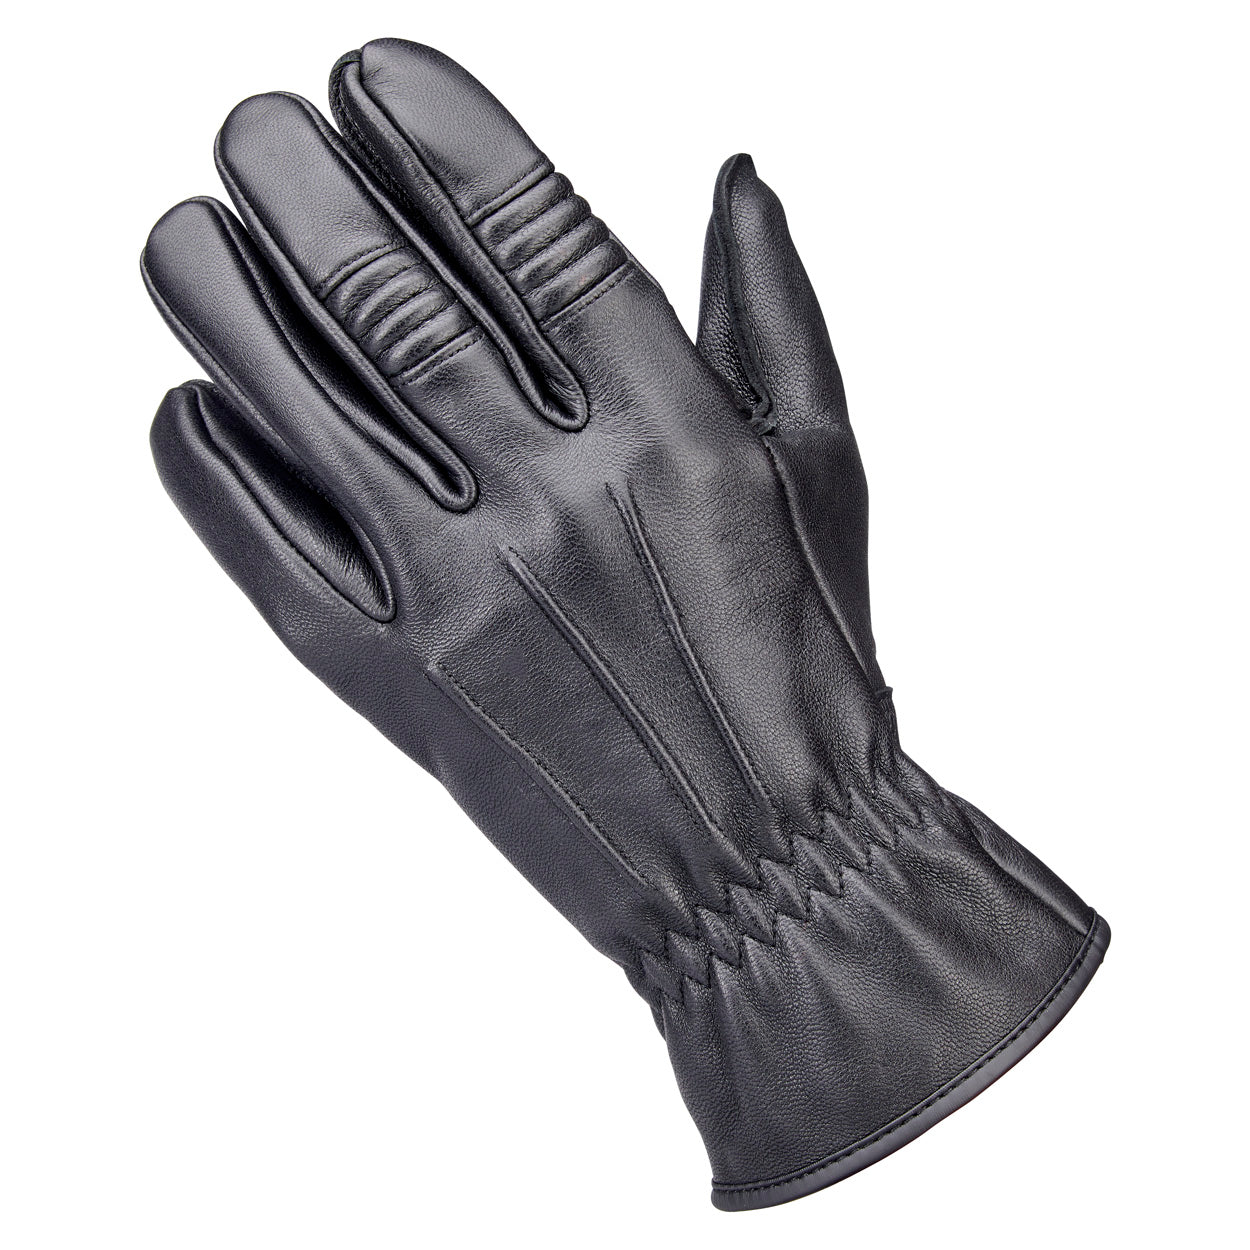 Biltwell Work Gloves - Black